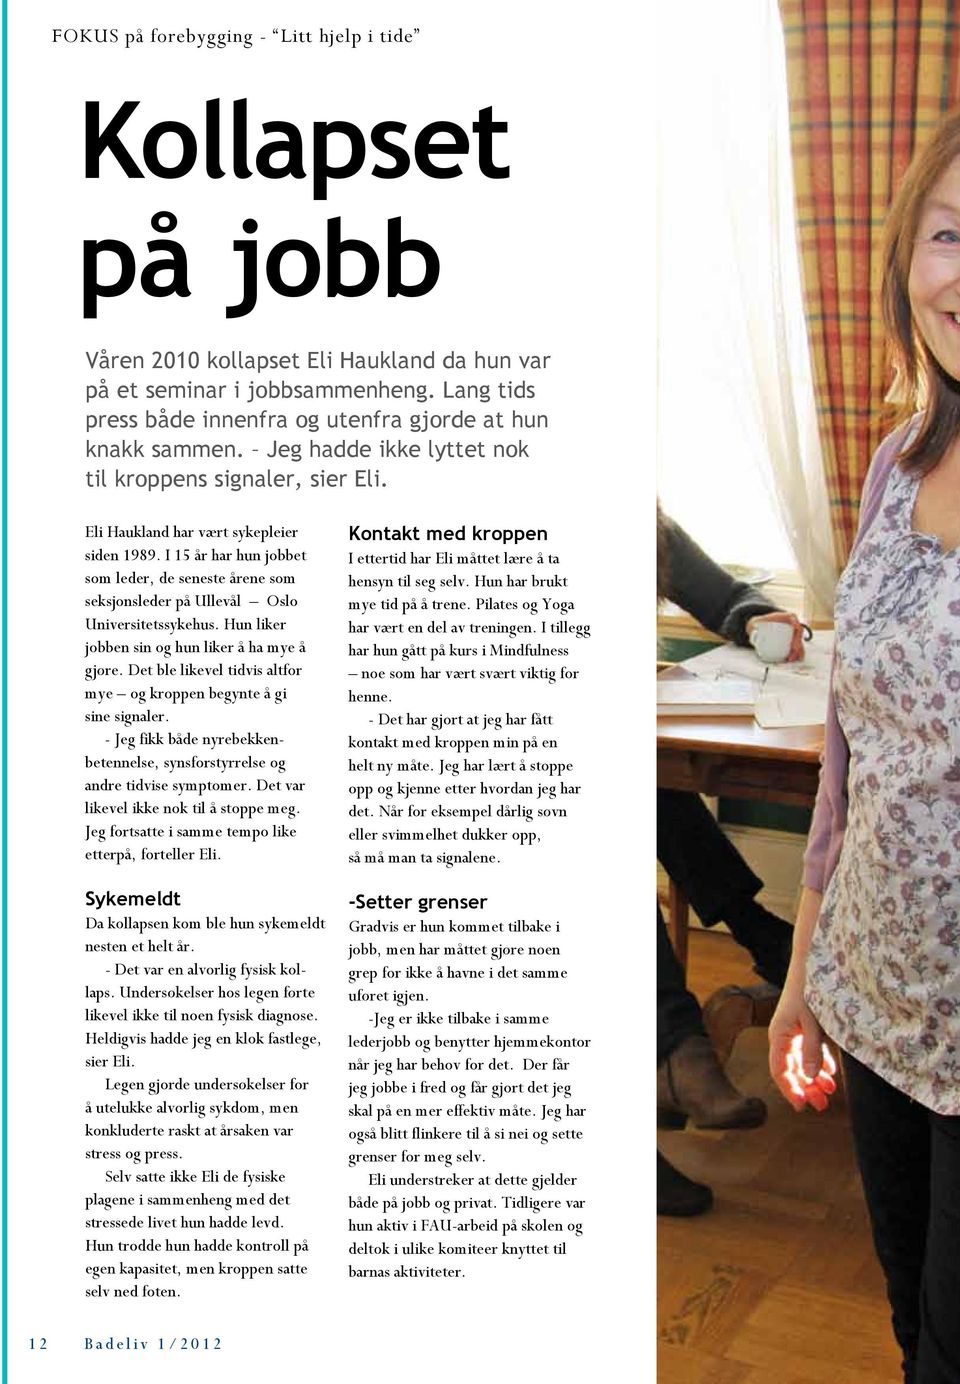 I 15 år har hun jobbet som leder, de seneste årene som seksjonsleder på Ullevål Oslo Universitetssykehus. Hun liker jobben sin og hun liker å ha mye å gjøre.